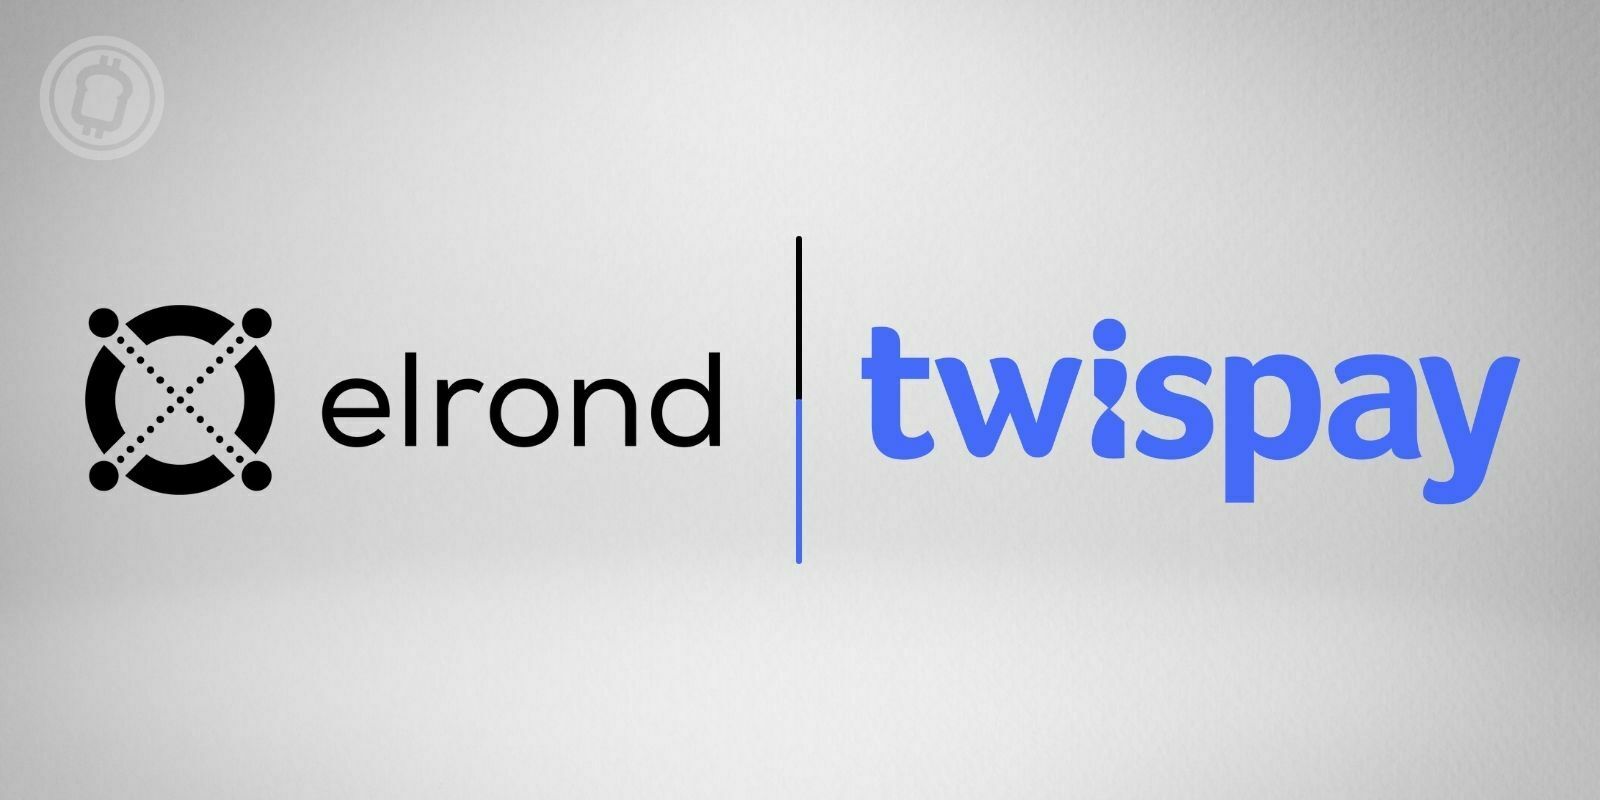 Elrond Network (EGLD) achève l'acquisition de l'institution de paiement Twispay